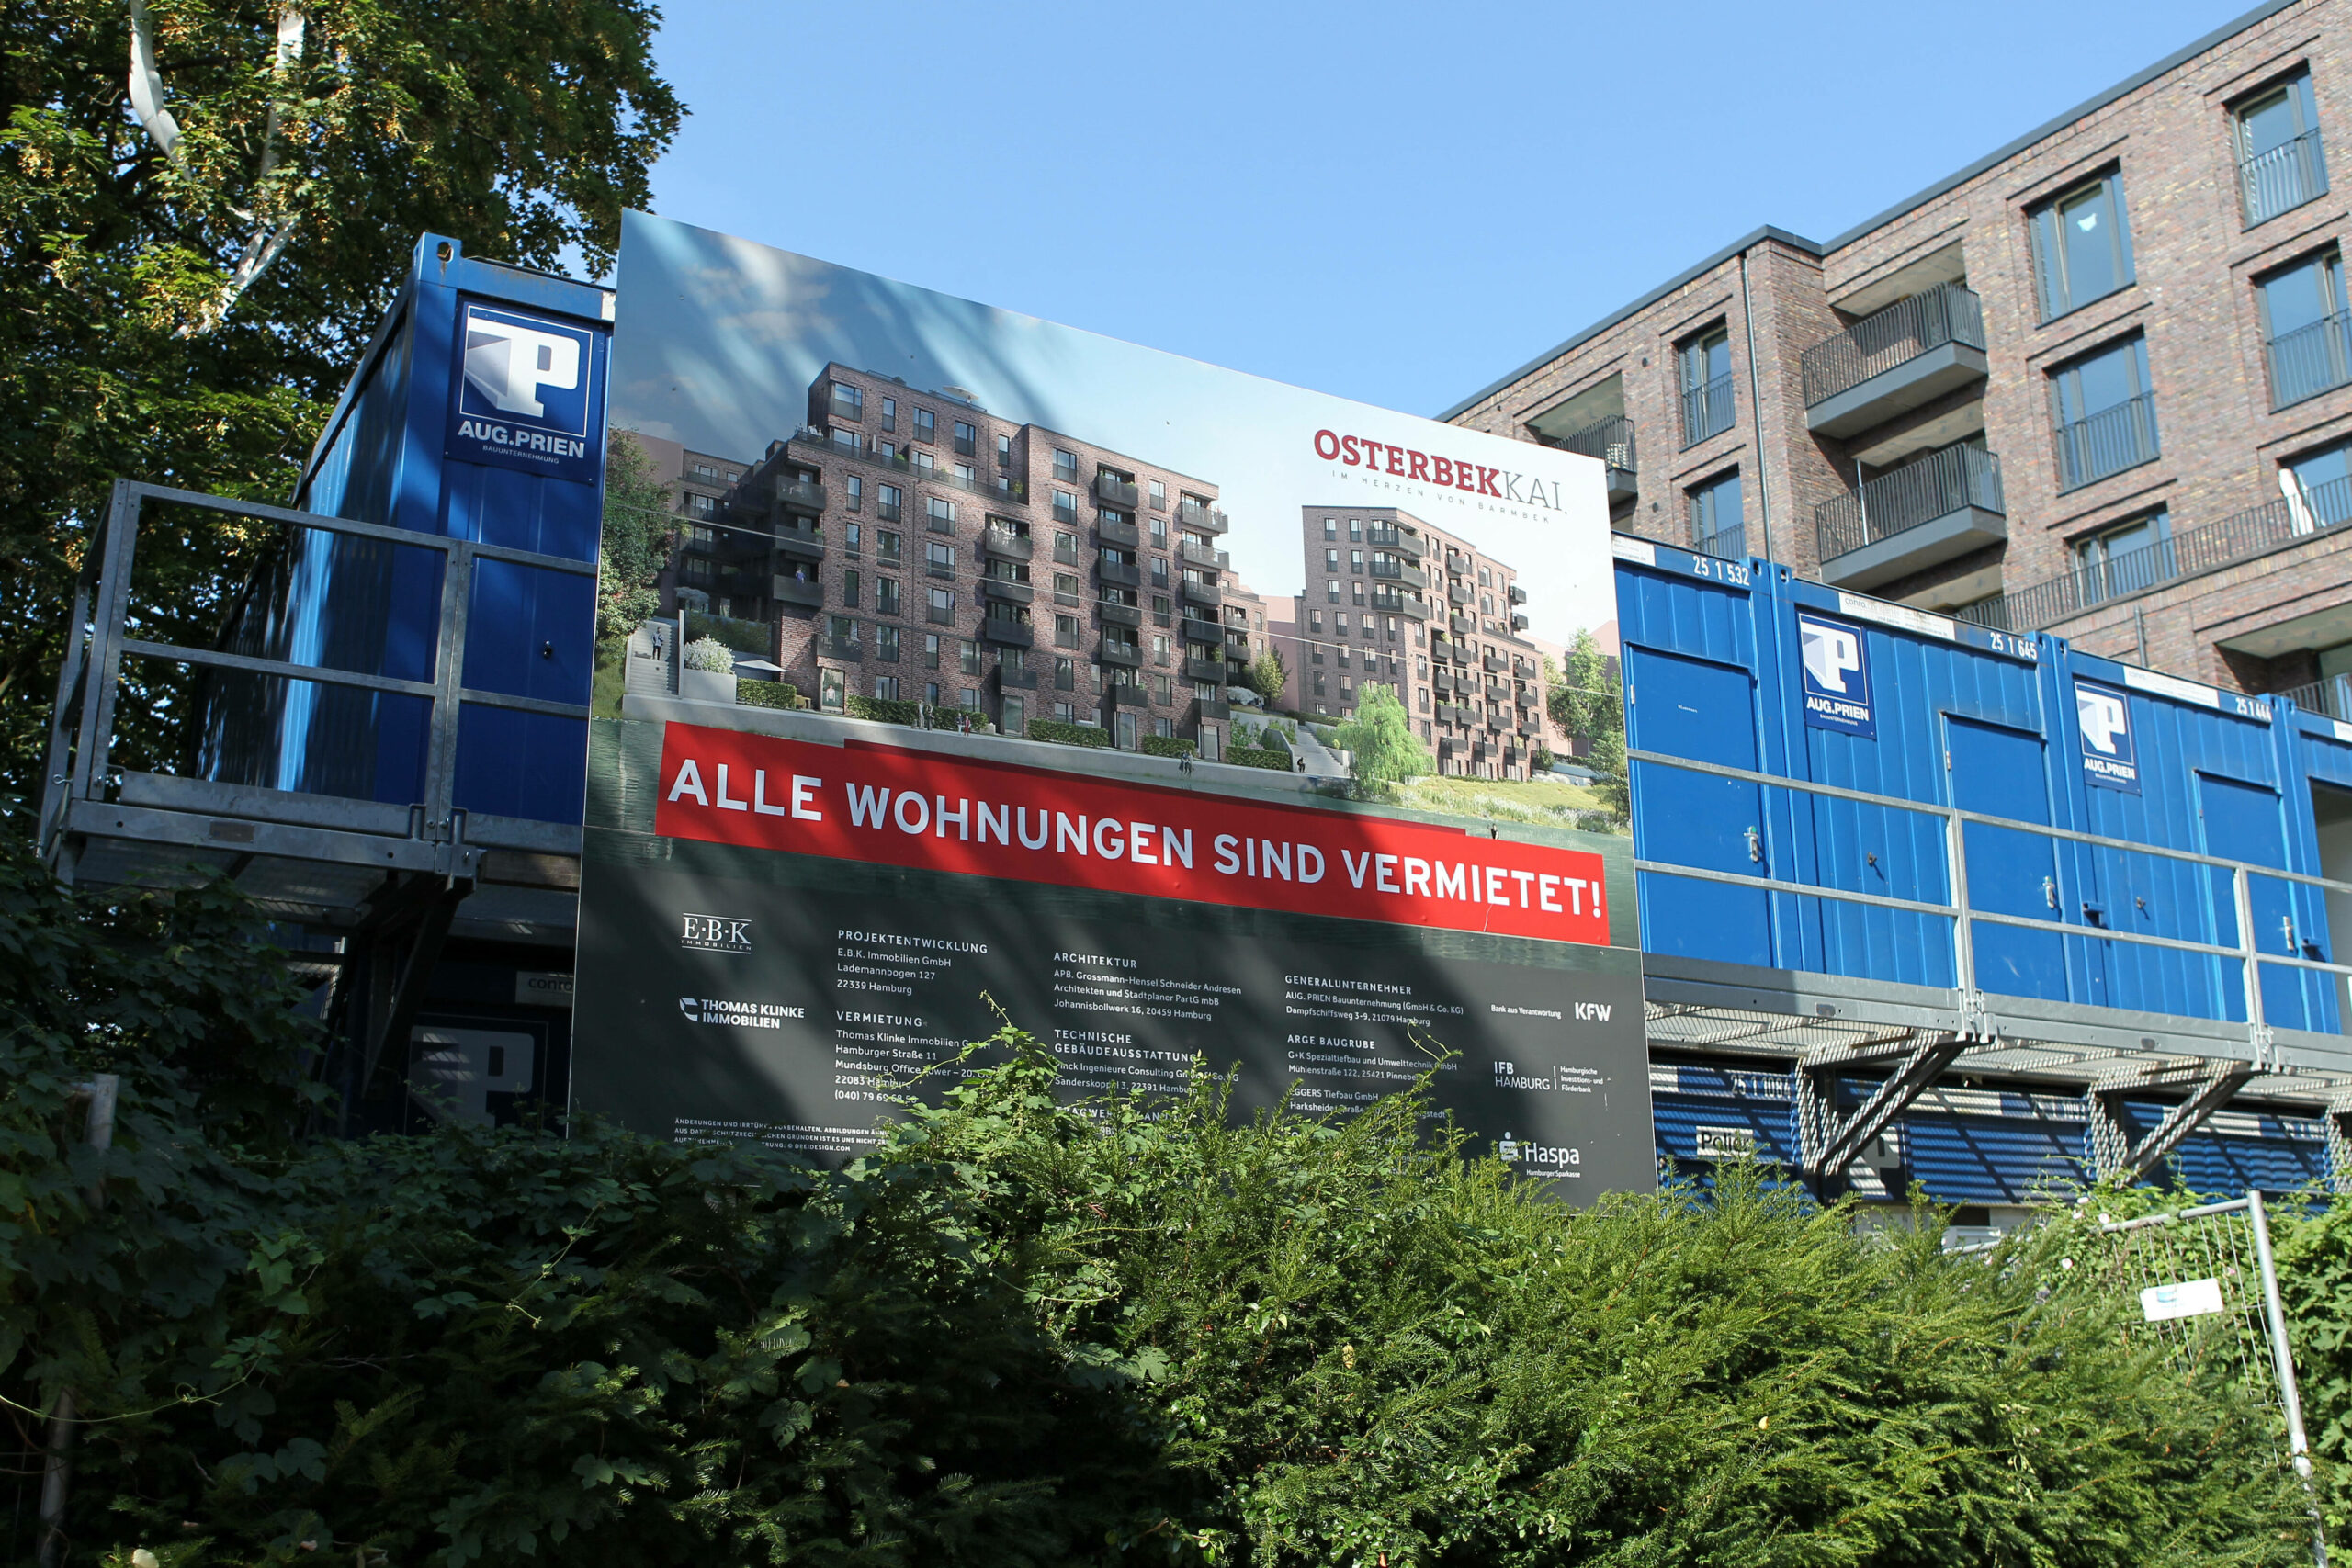 Wohnquartier Osterbekkai am Osterbekkanal in Hamburg.